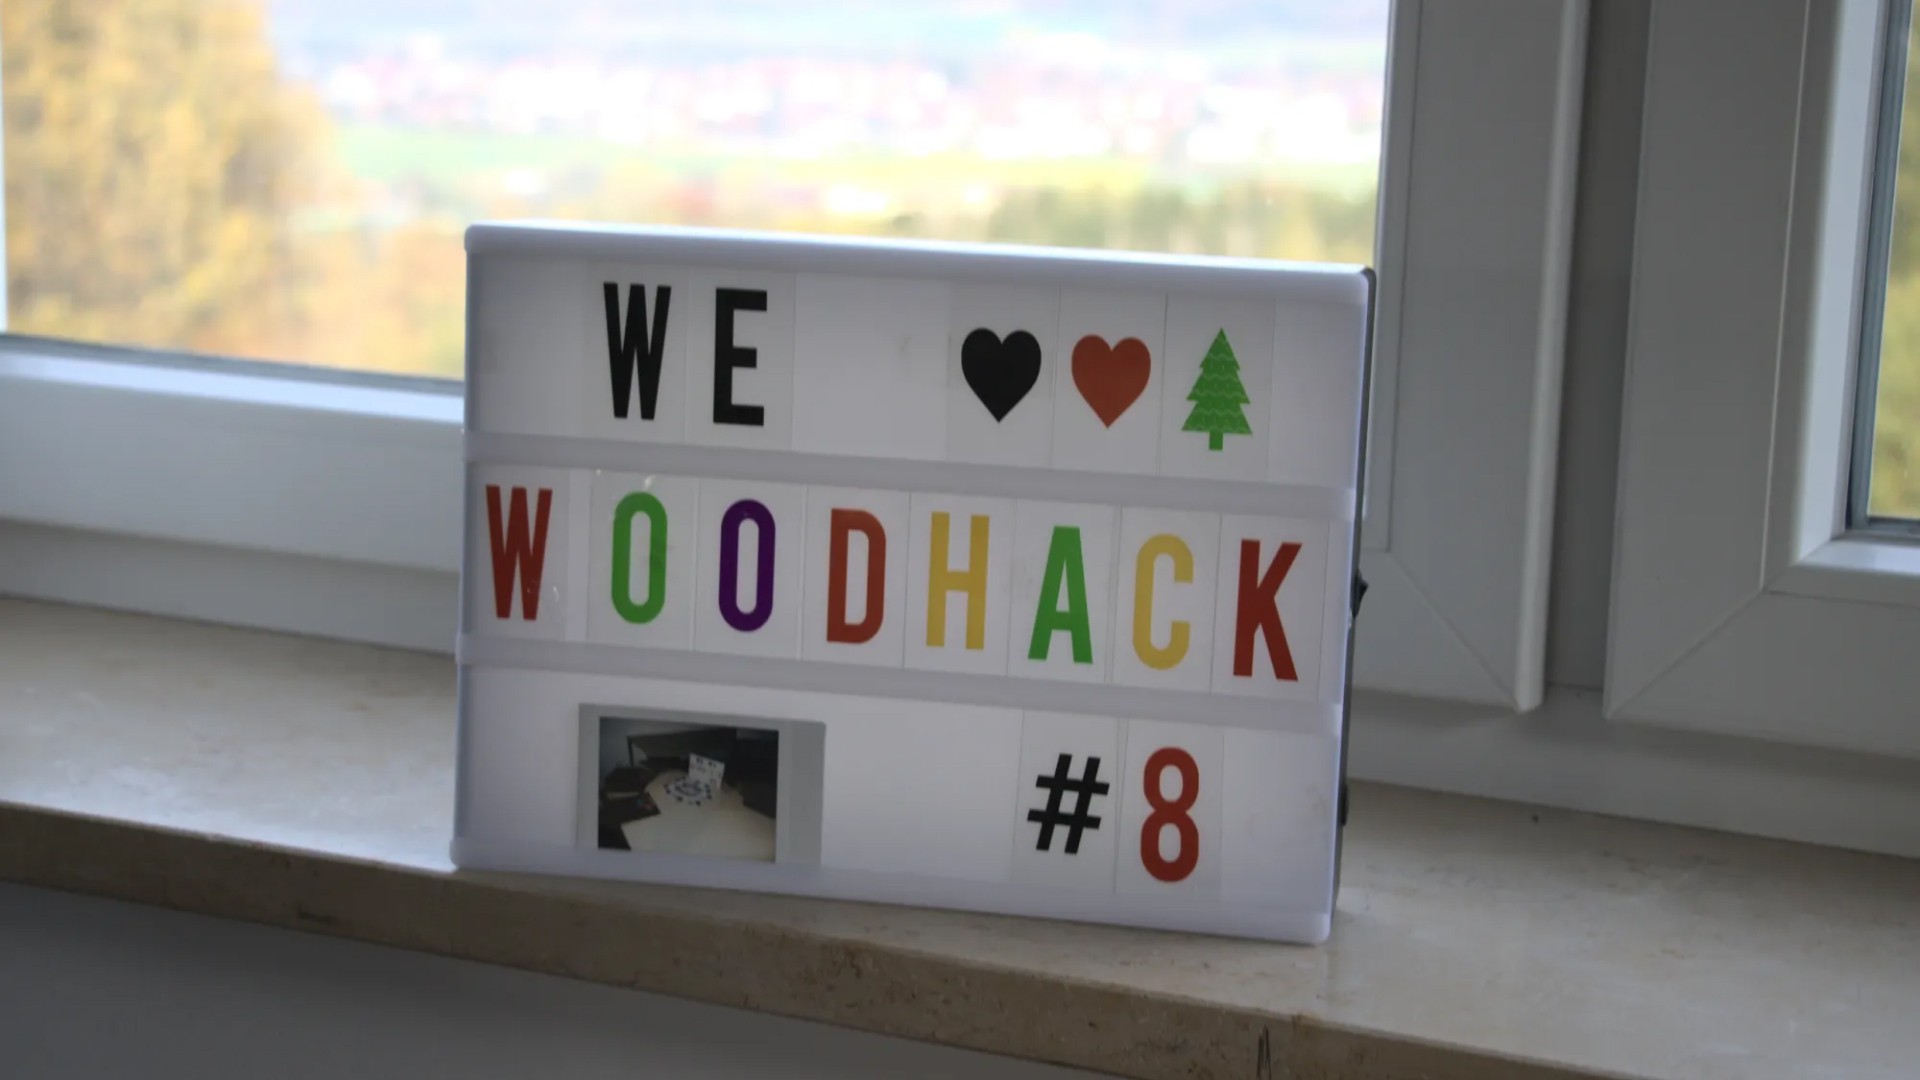 we woodhack